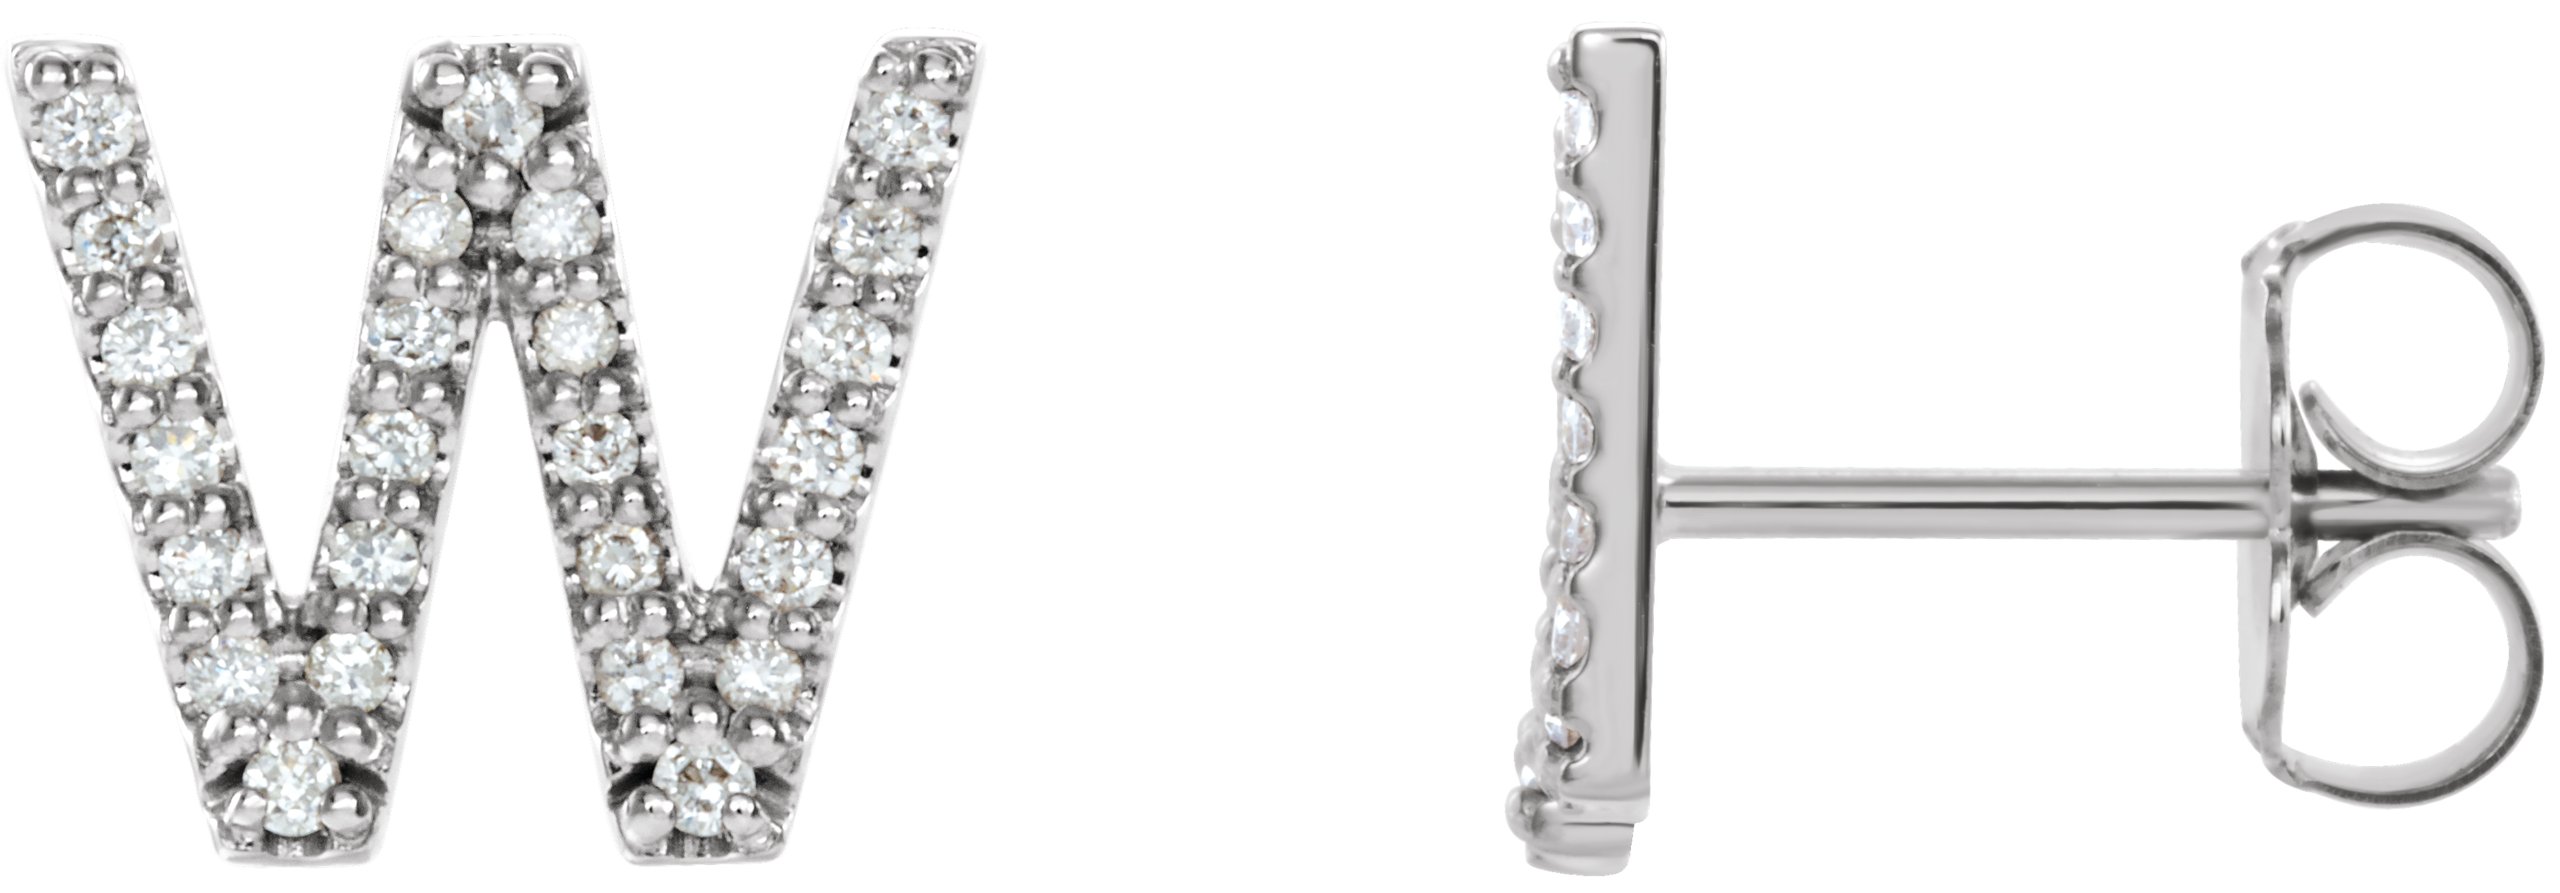 Platinum 1/6 CTW Natural Diamond Initial W Earrings